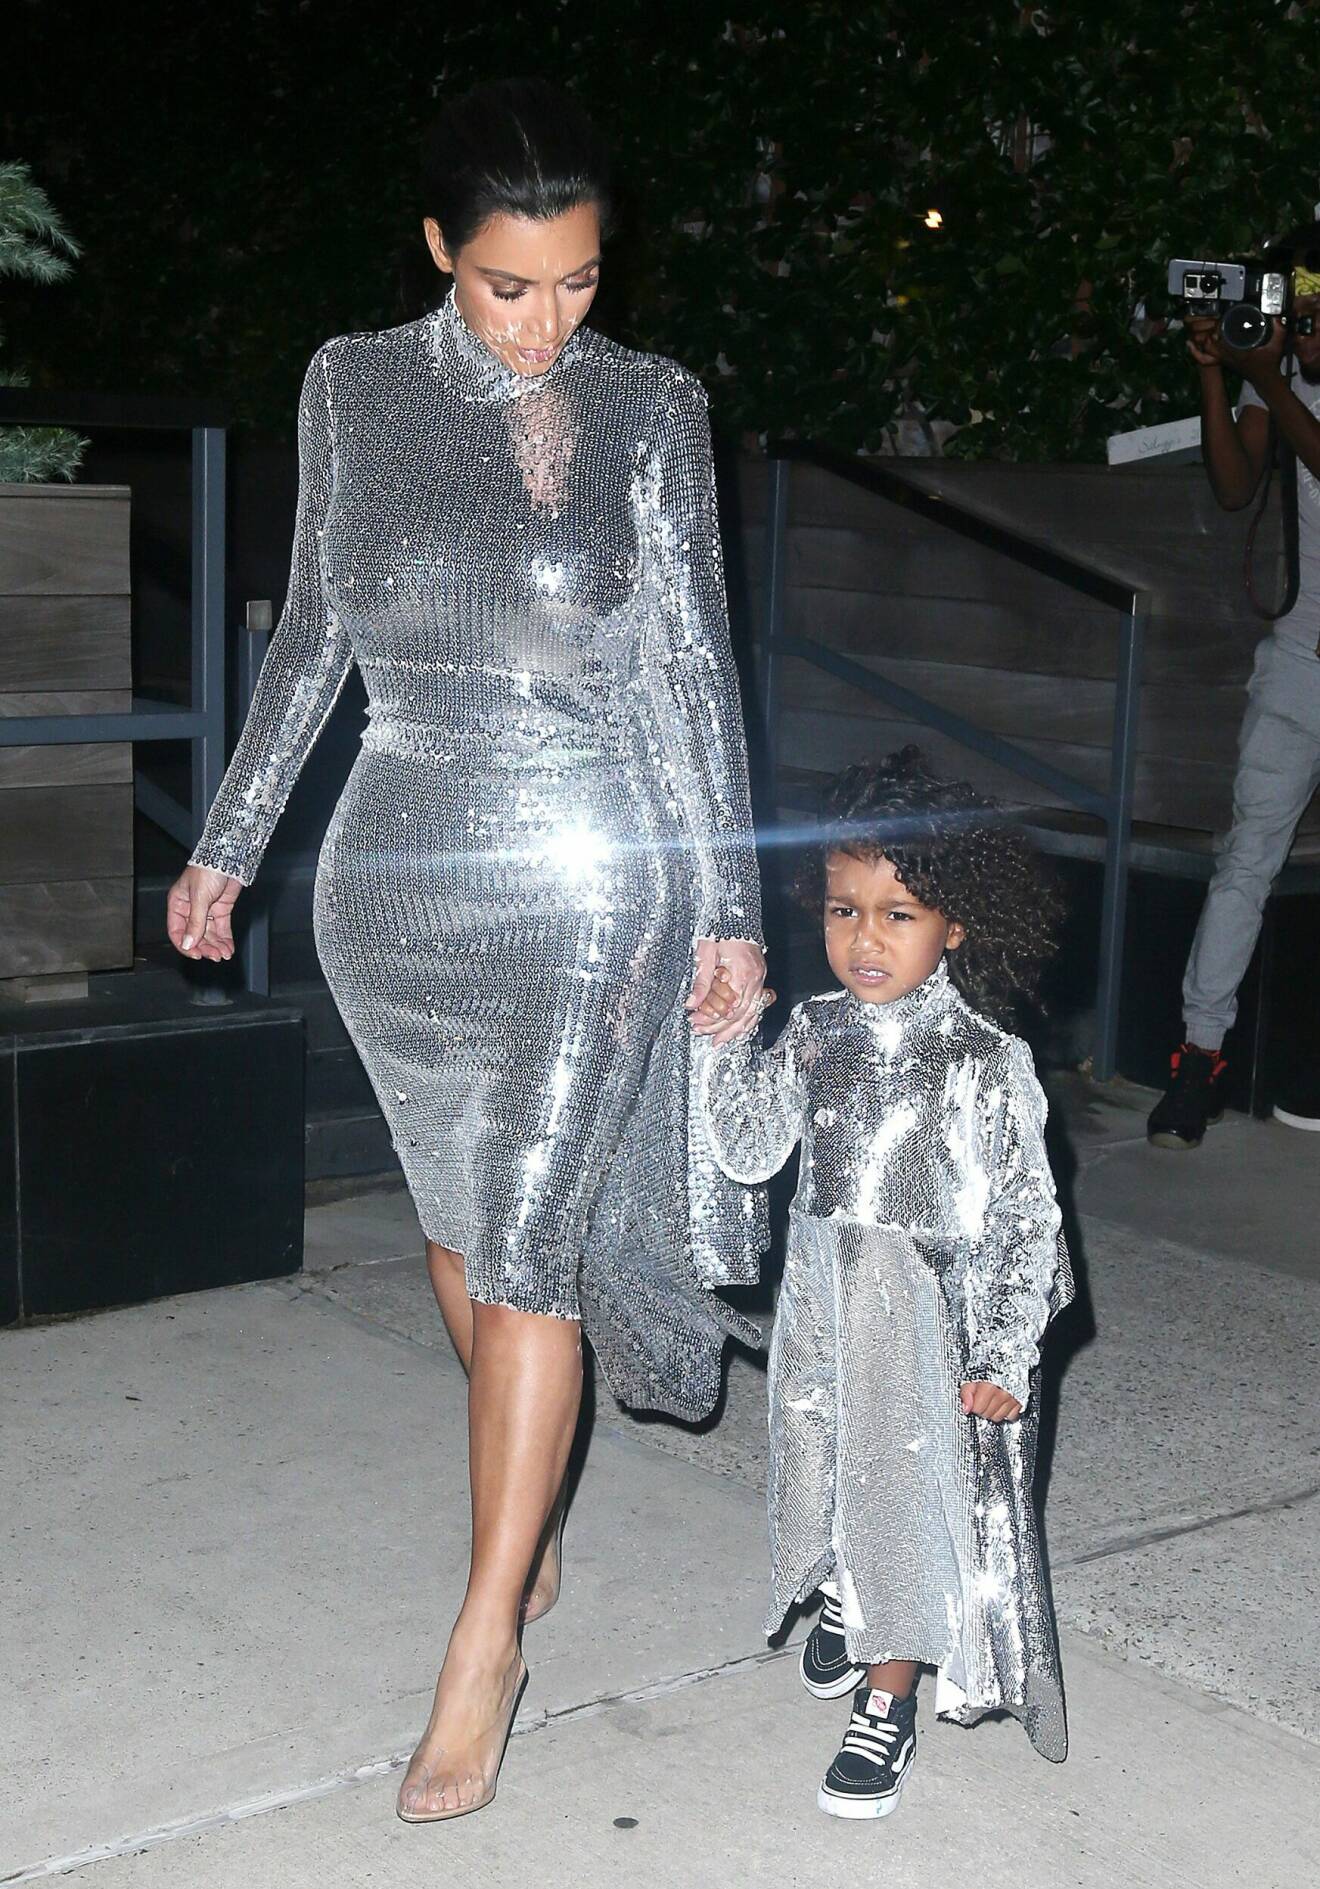 Kim Kardashian matchar gärna dottern North West.